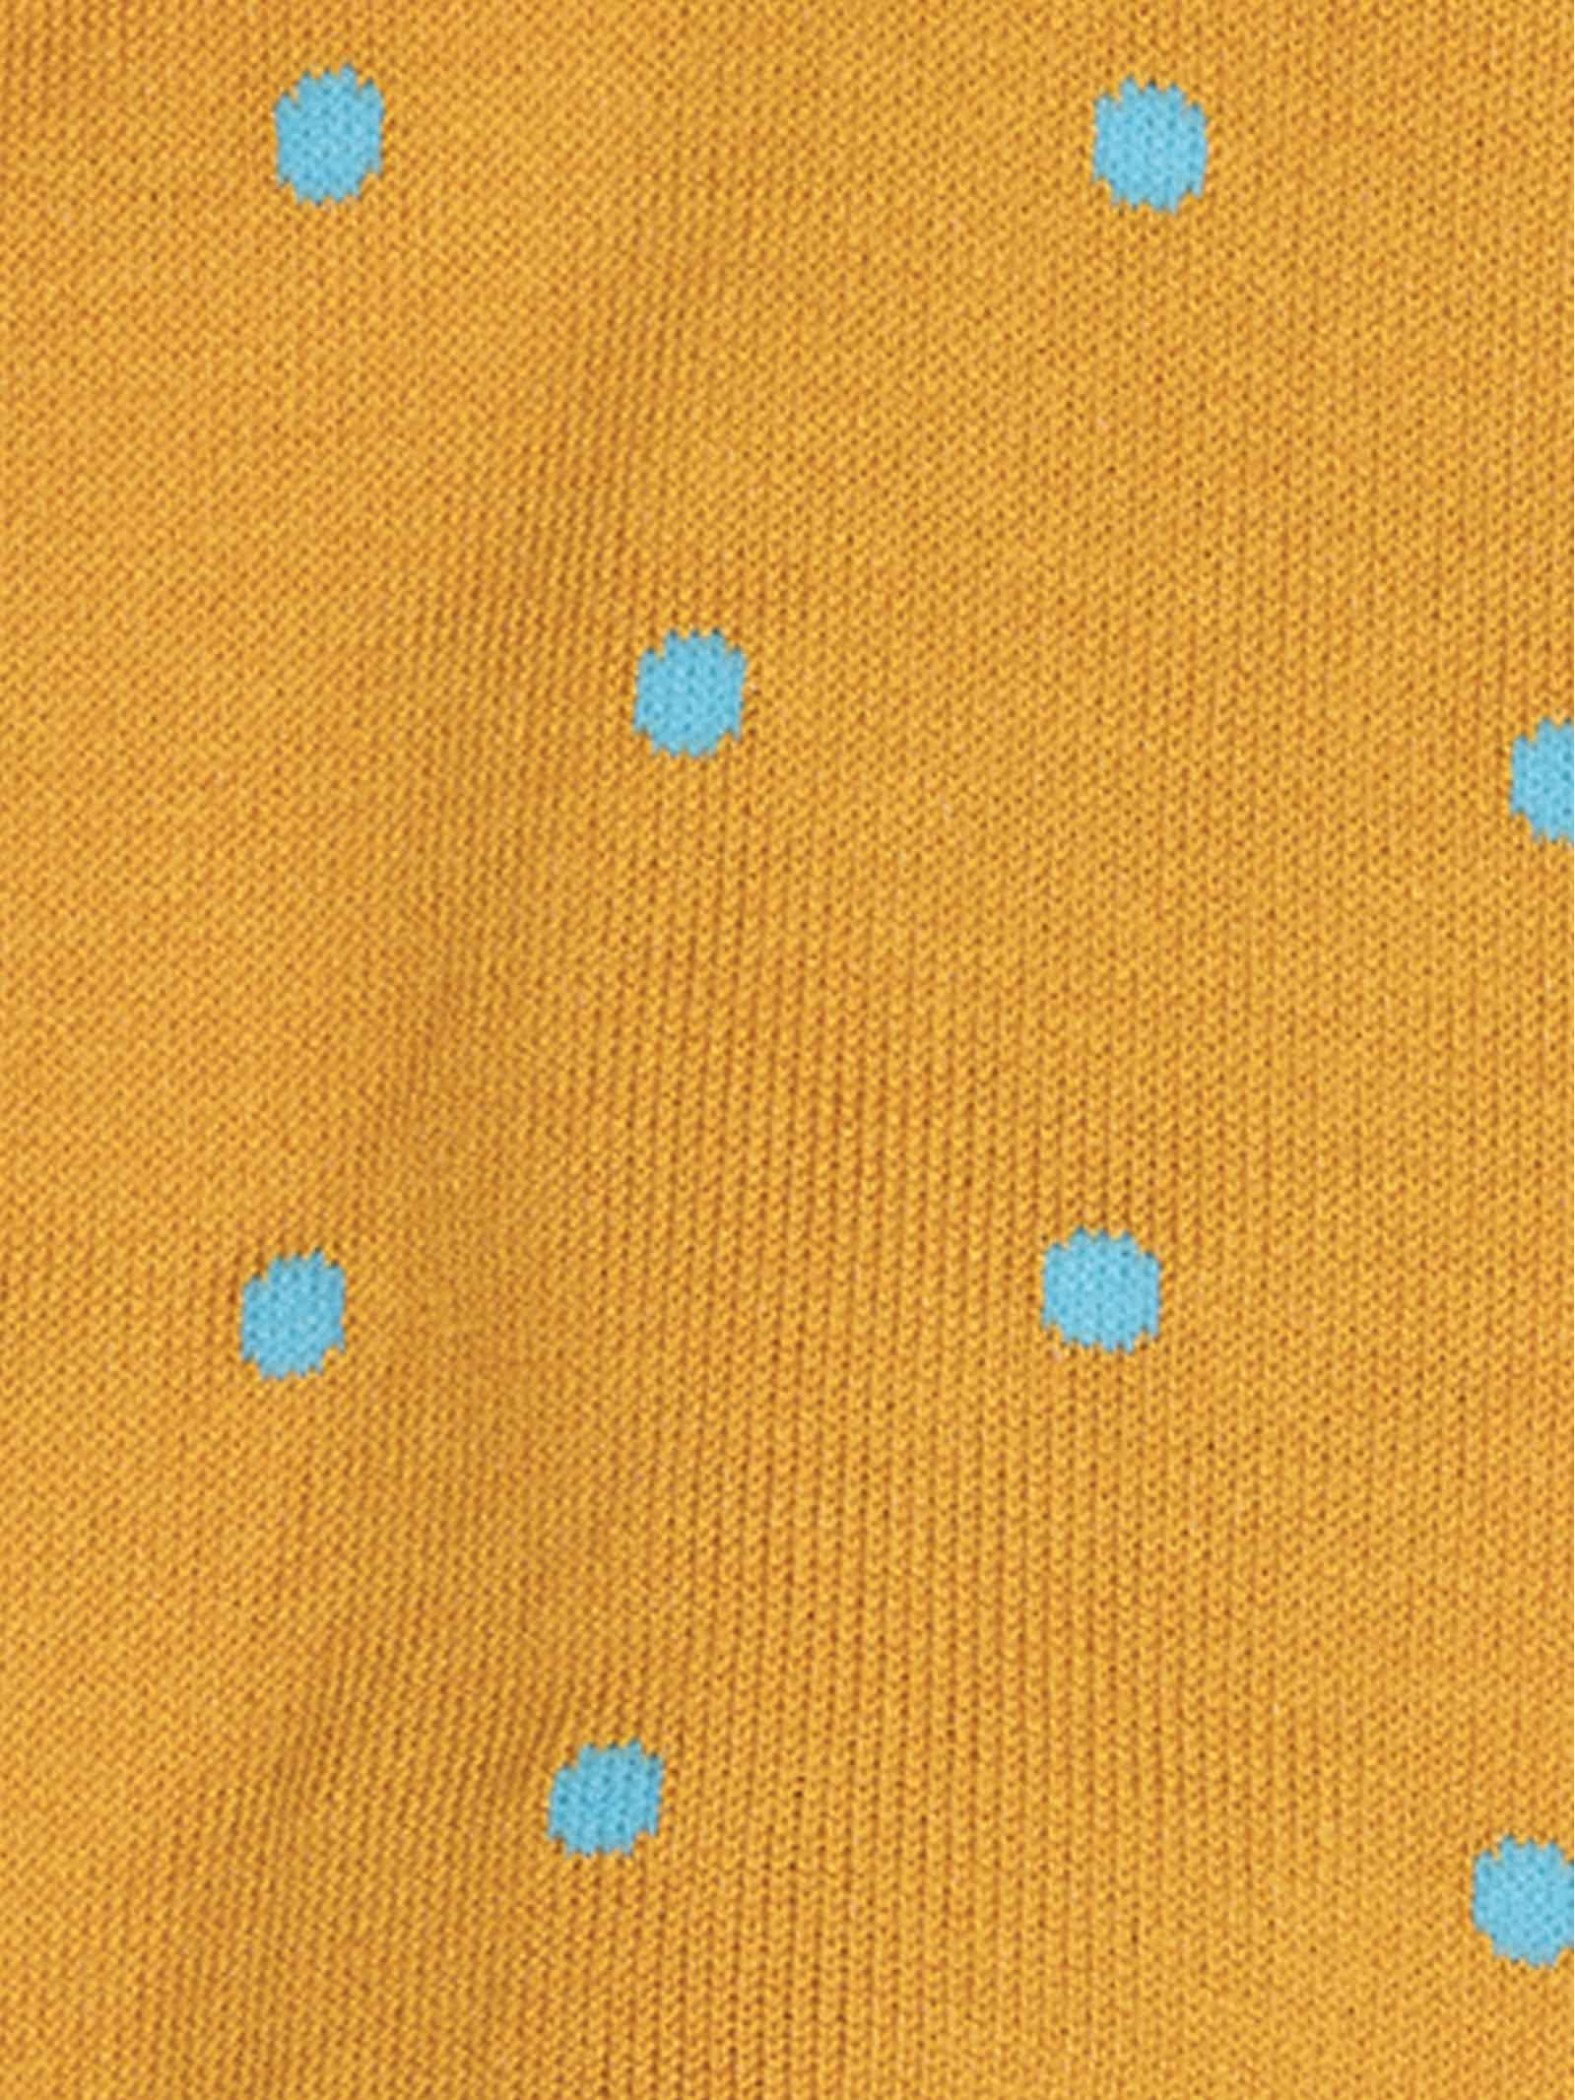 Einfarbige Socken mit Polka-Dot-Muster für Herren aus frischer Baumwolle - Made in Italy